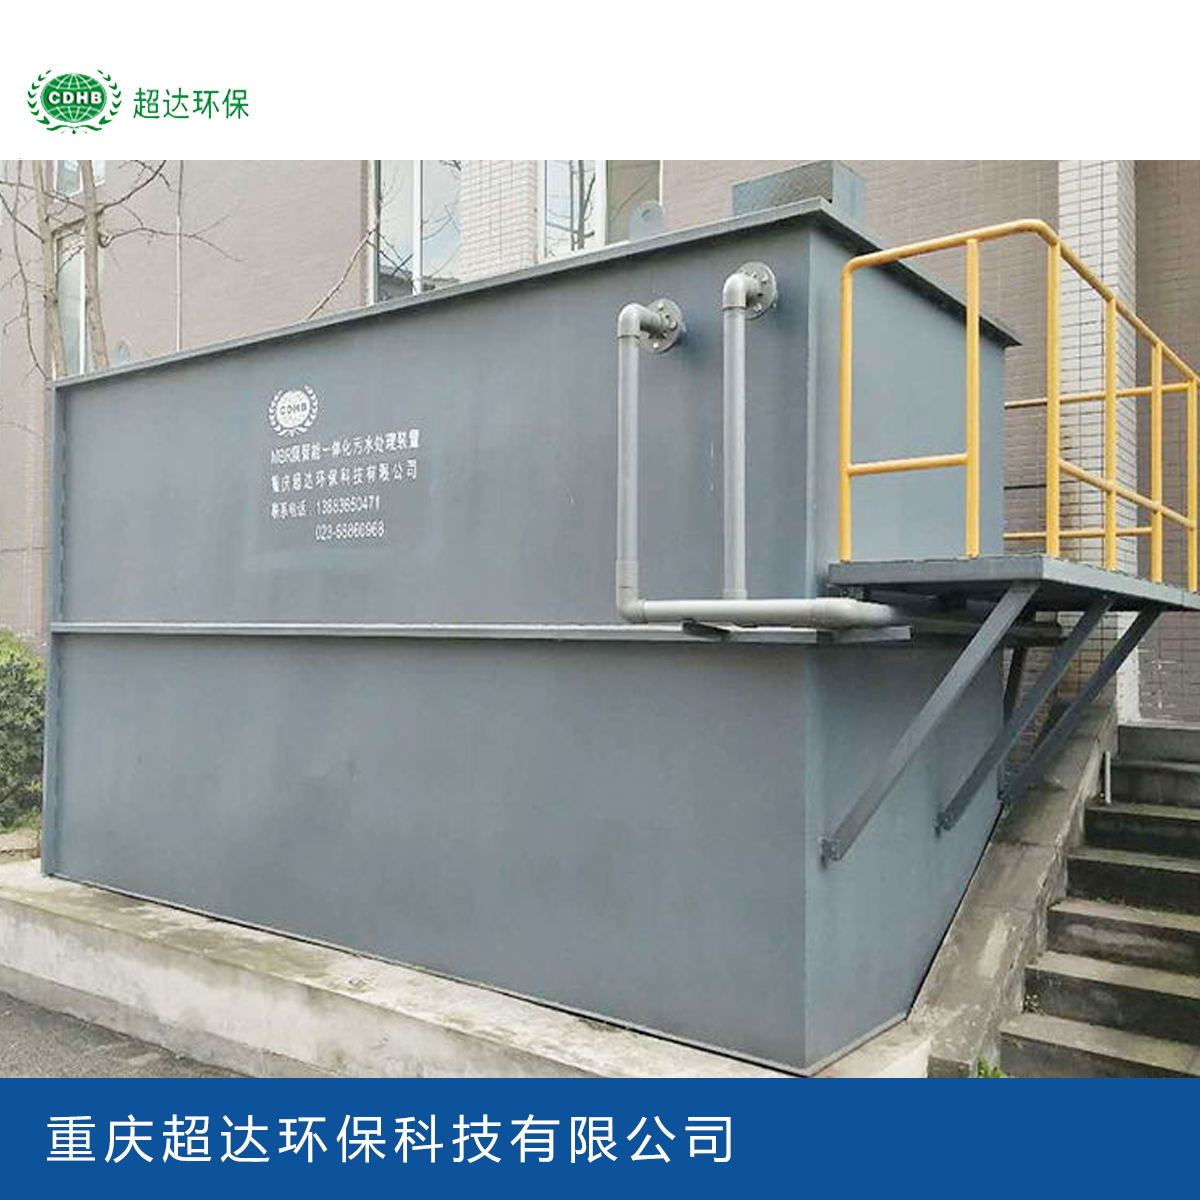 一体化污水处理设备厂家_重庆超达环保科技